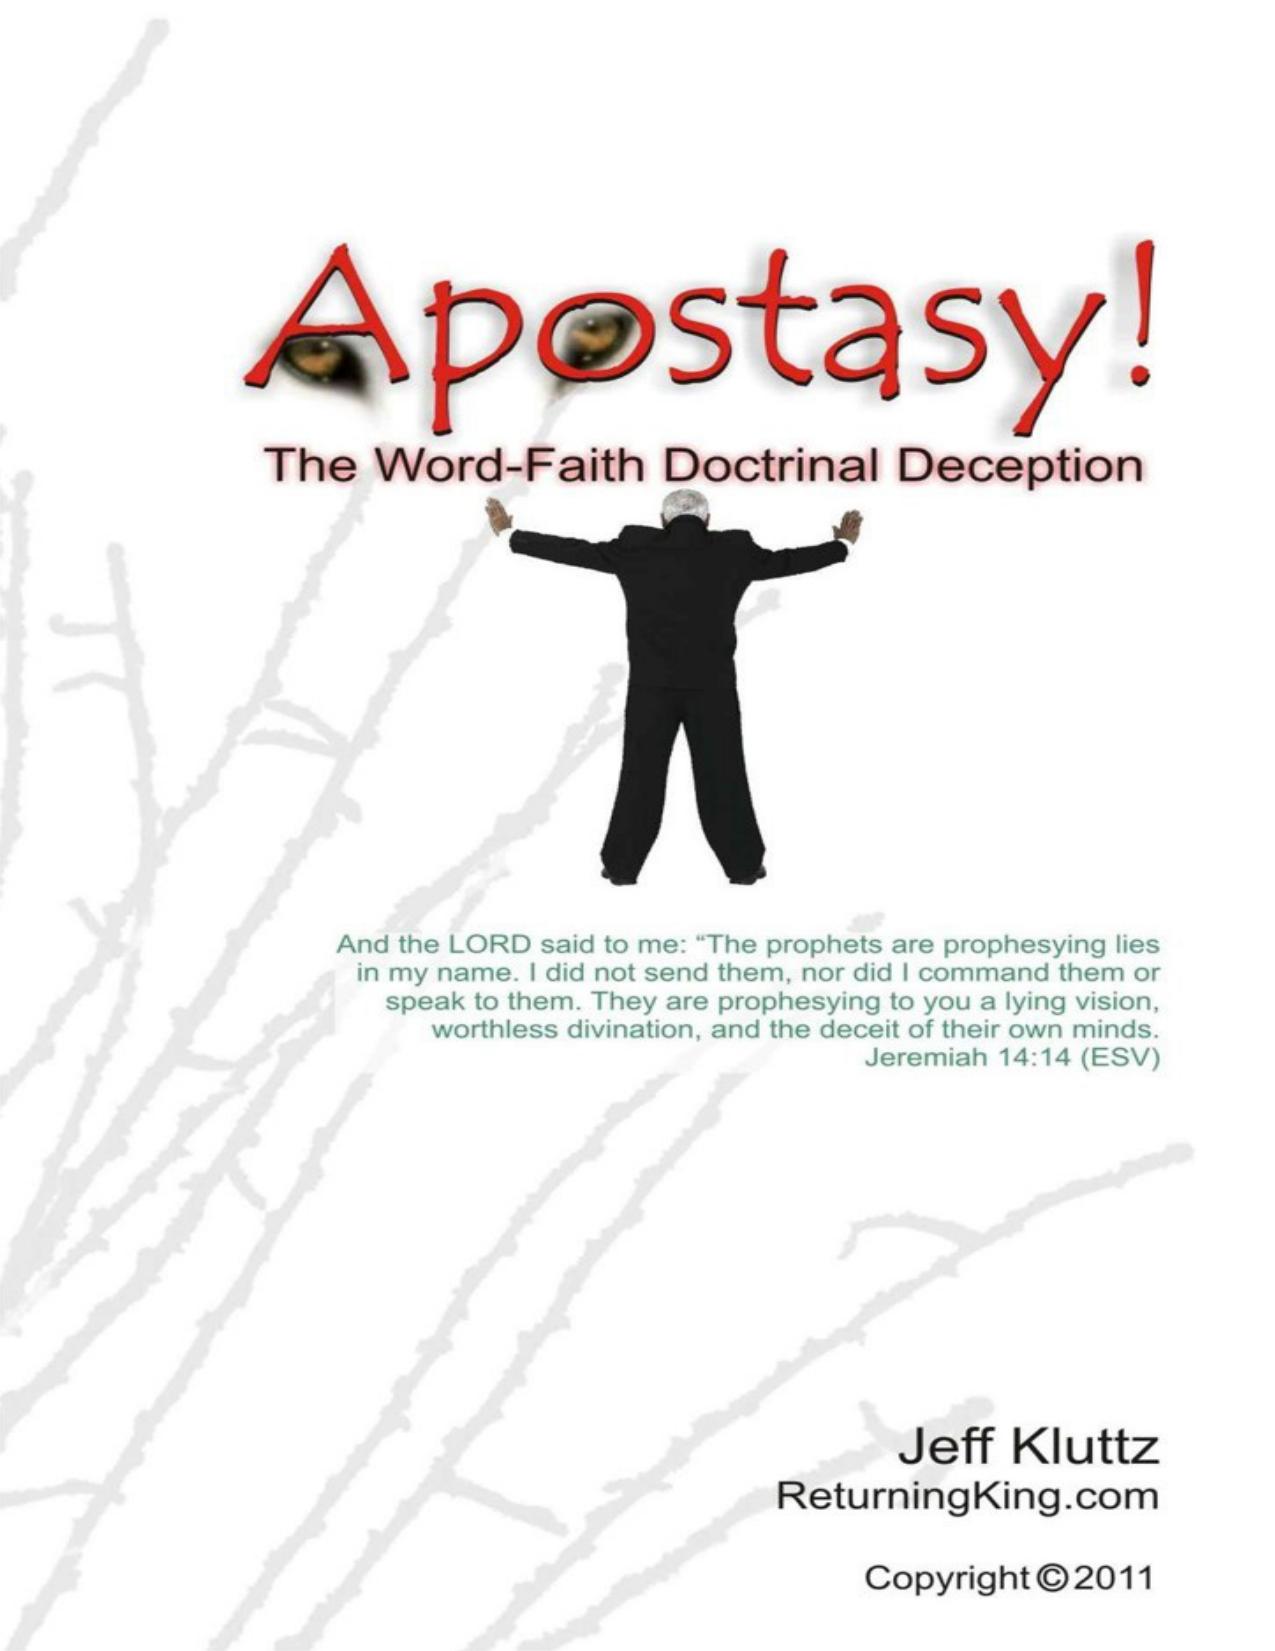 Apostasy!: The Word-Faith Doctrinal Deception